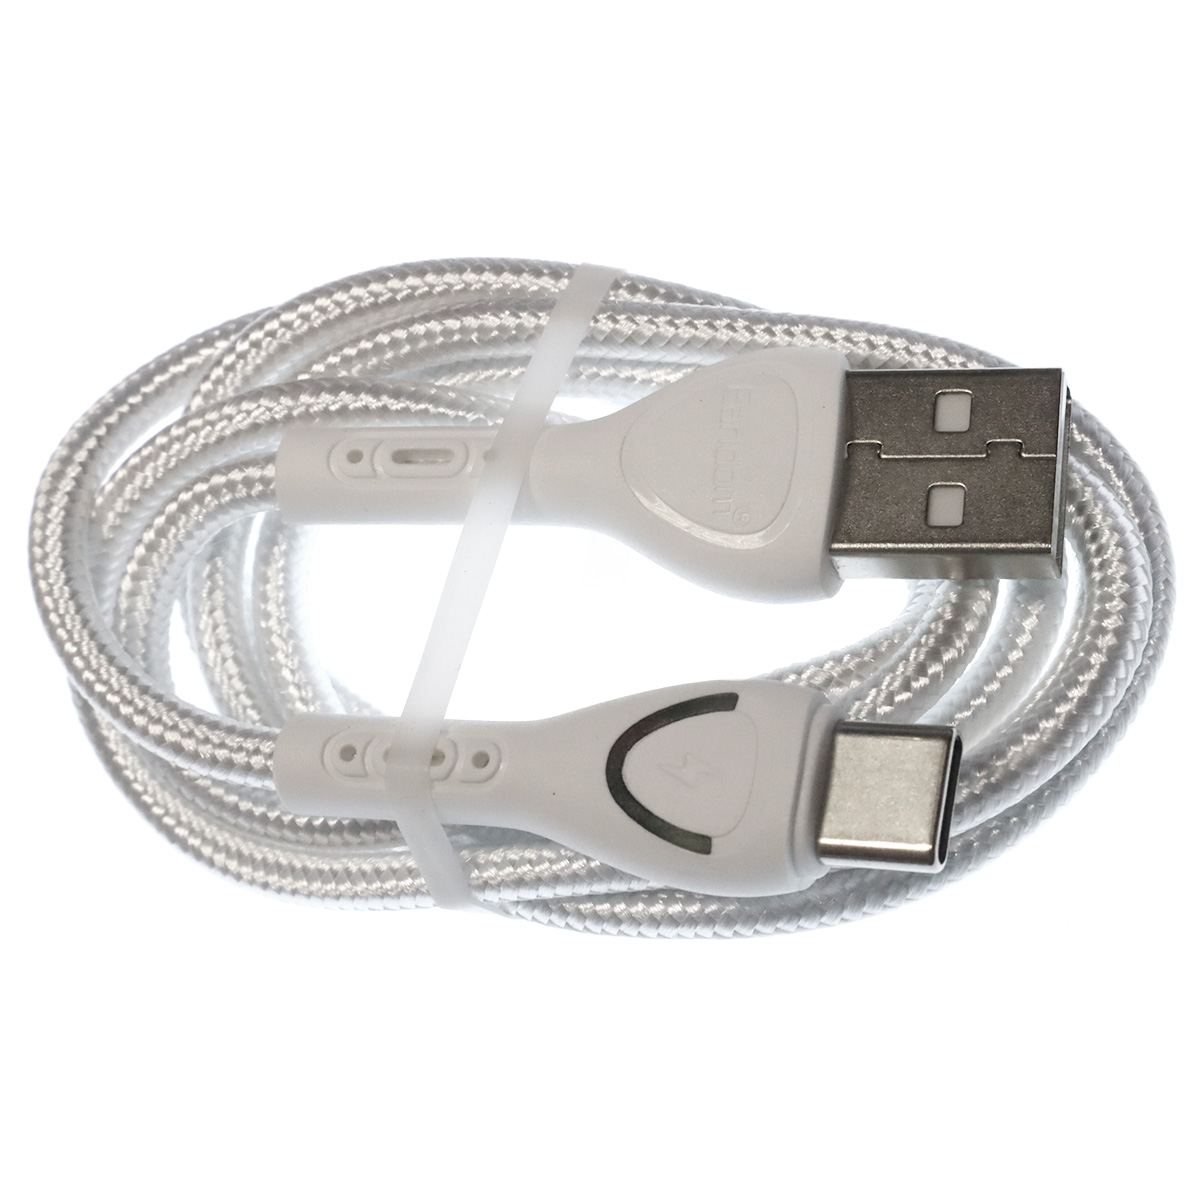 Кабель EARLDOM EC-117C USB Type C, 3A, Led индикатор, длина 1 метр, цвет белый